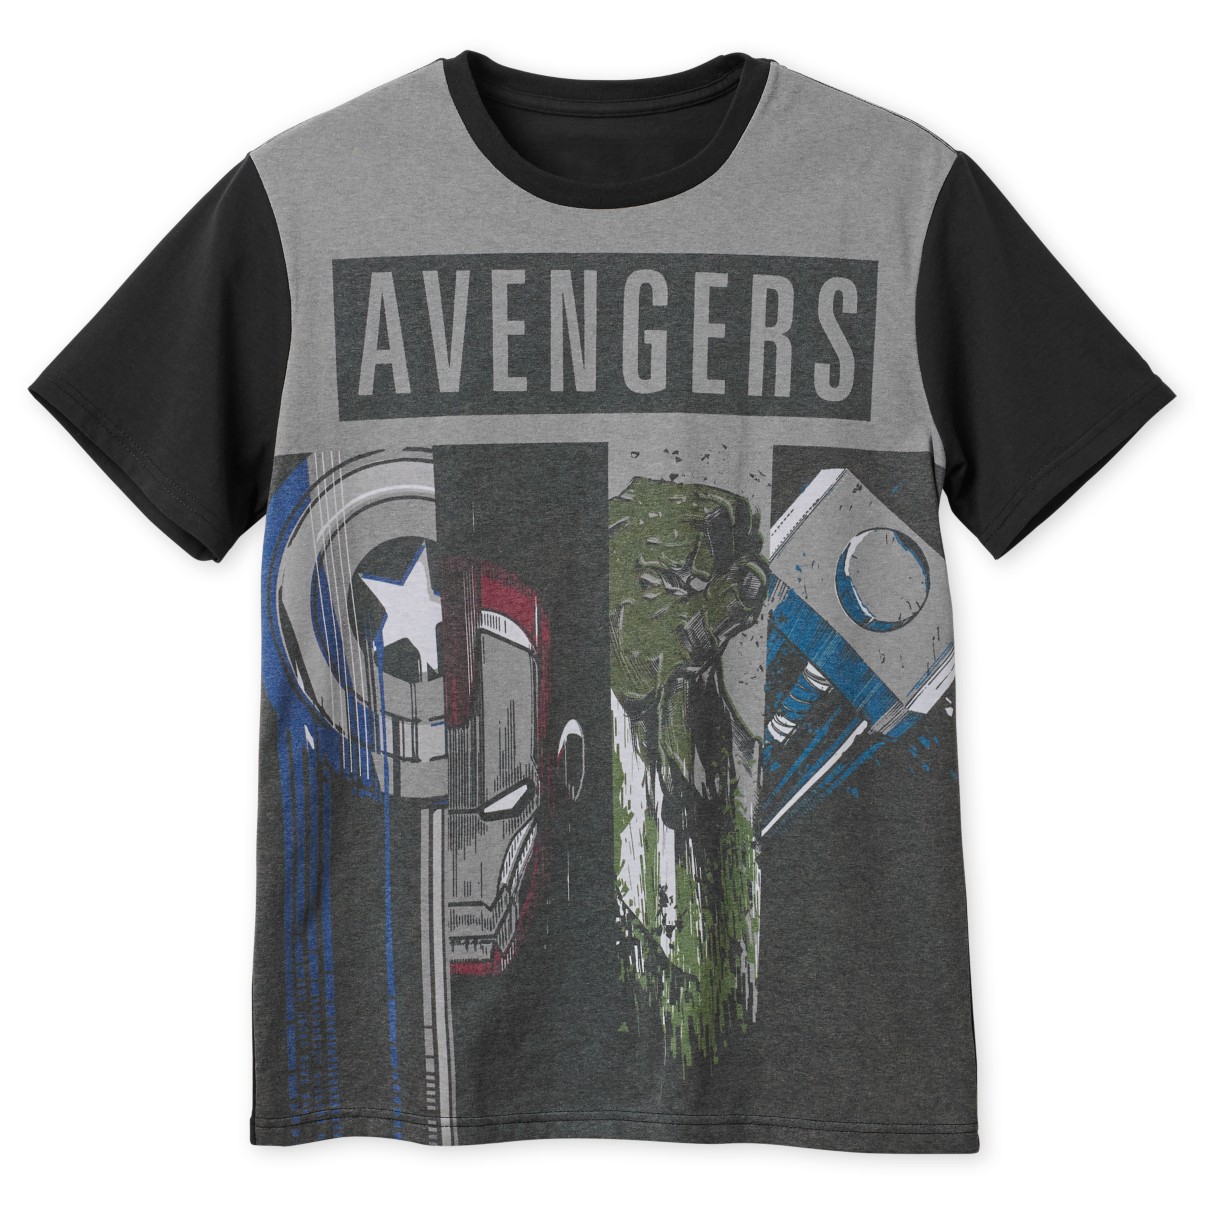 The Avengers T-Shirt for Men